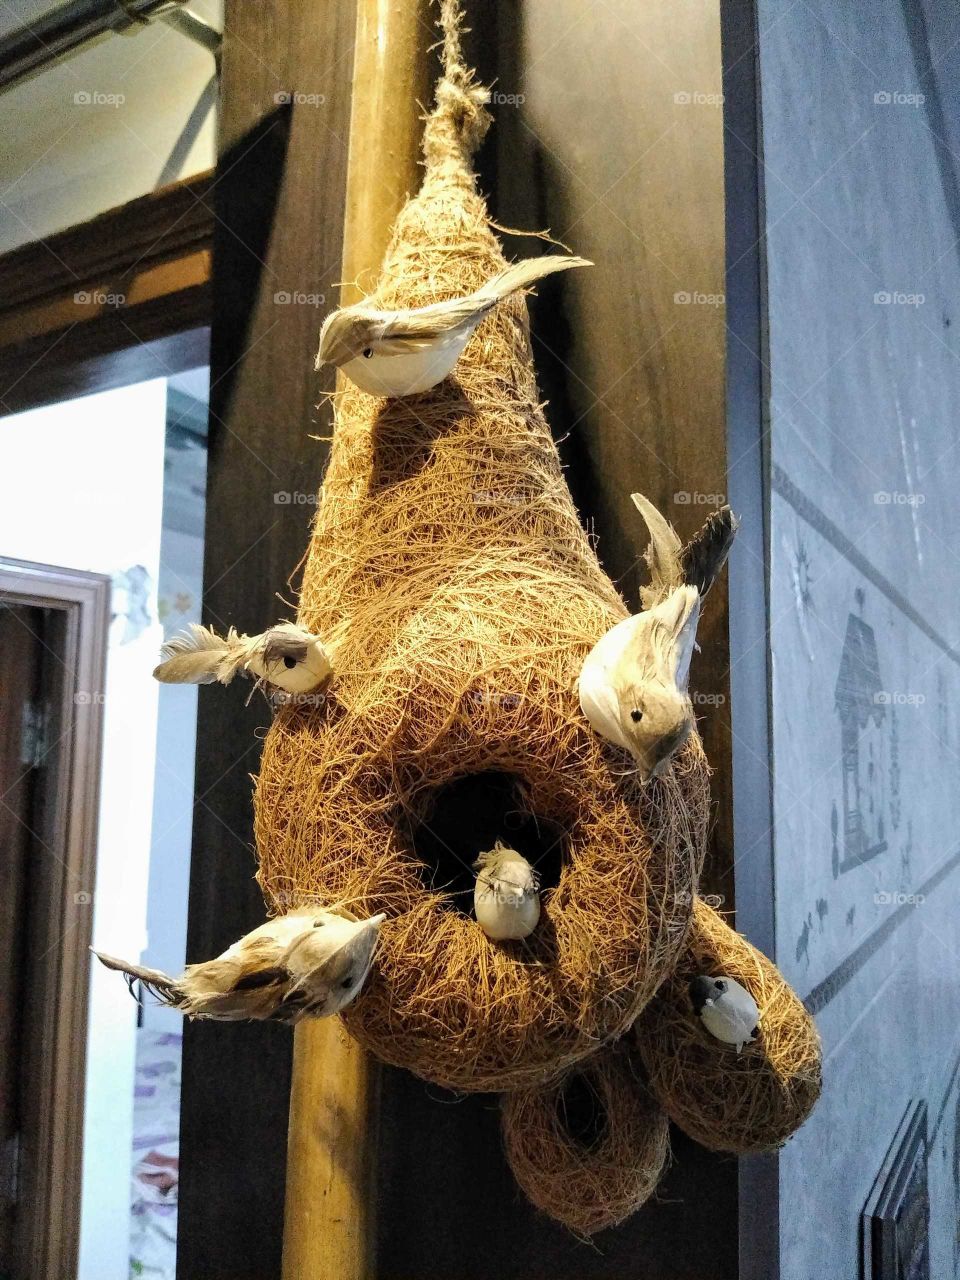 Artificial birds nest